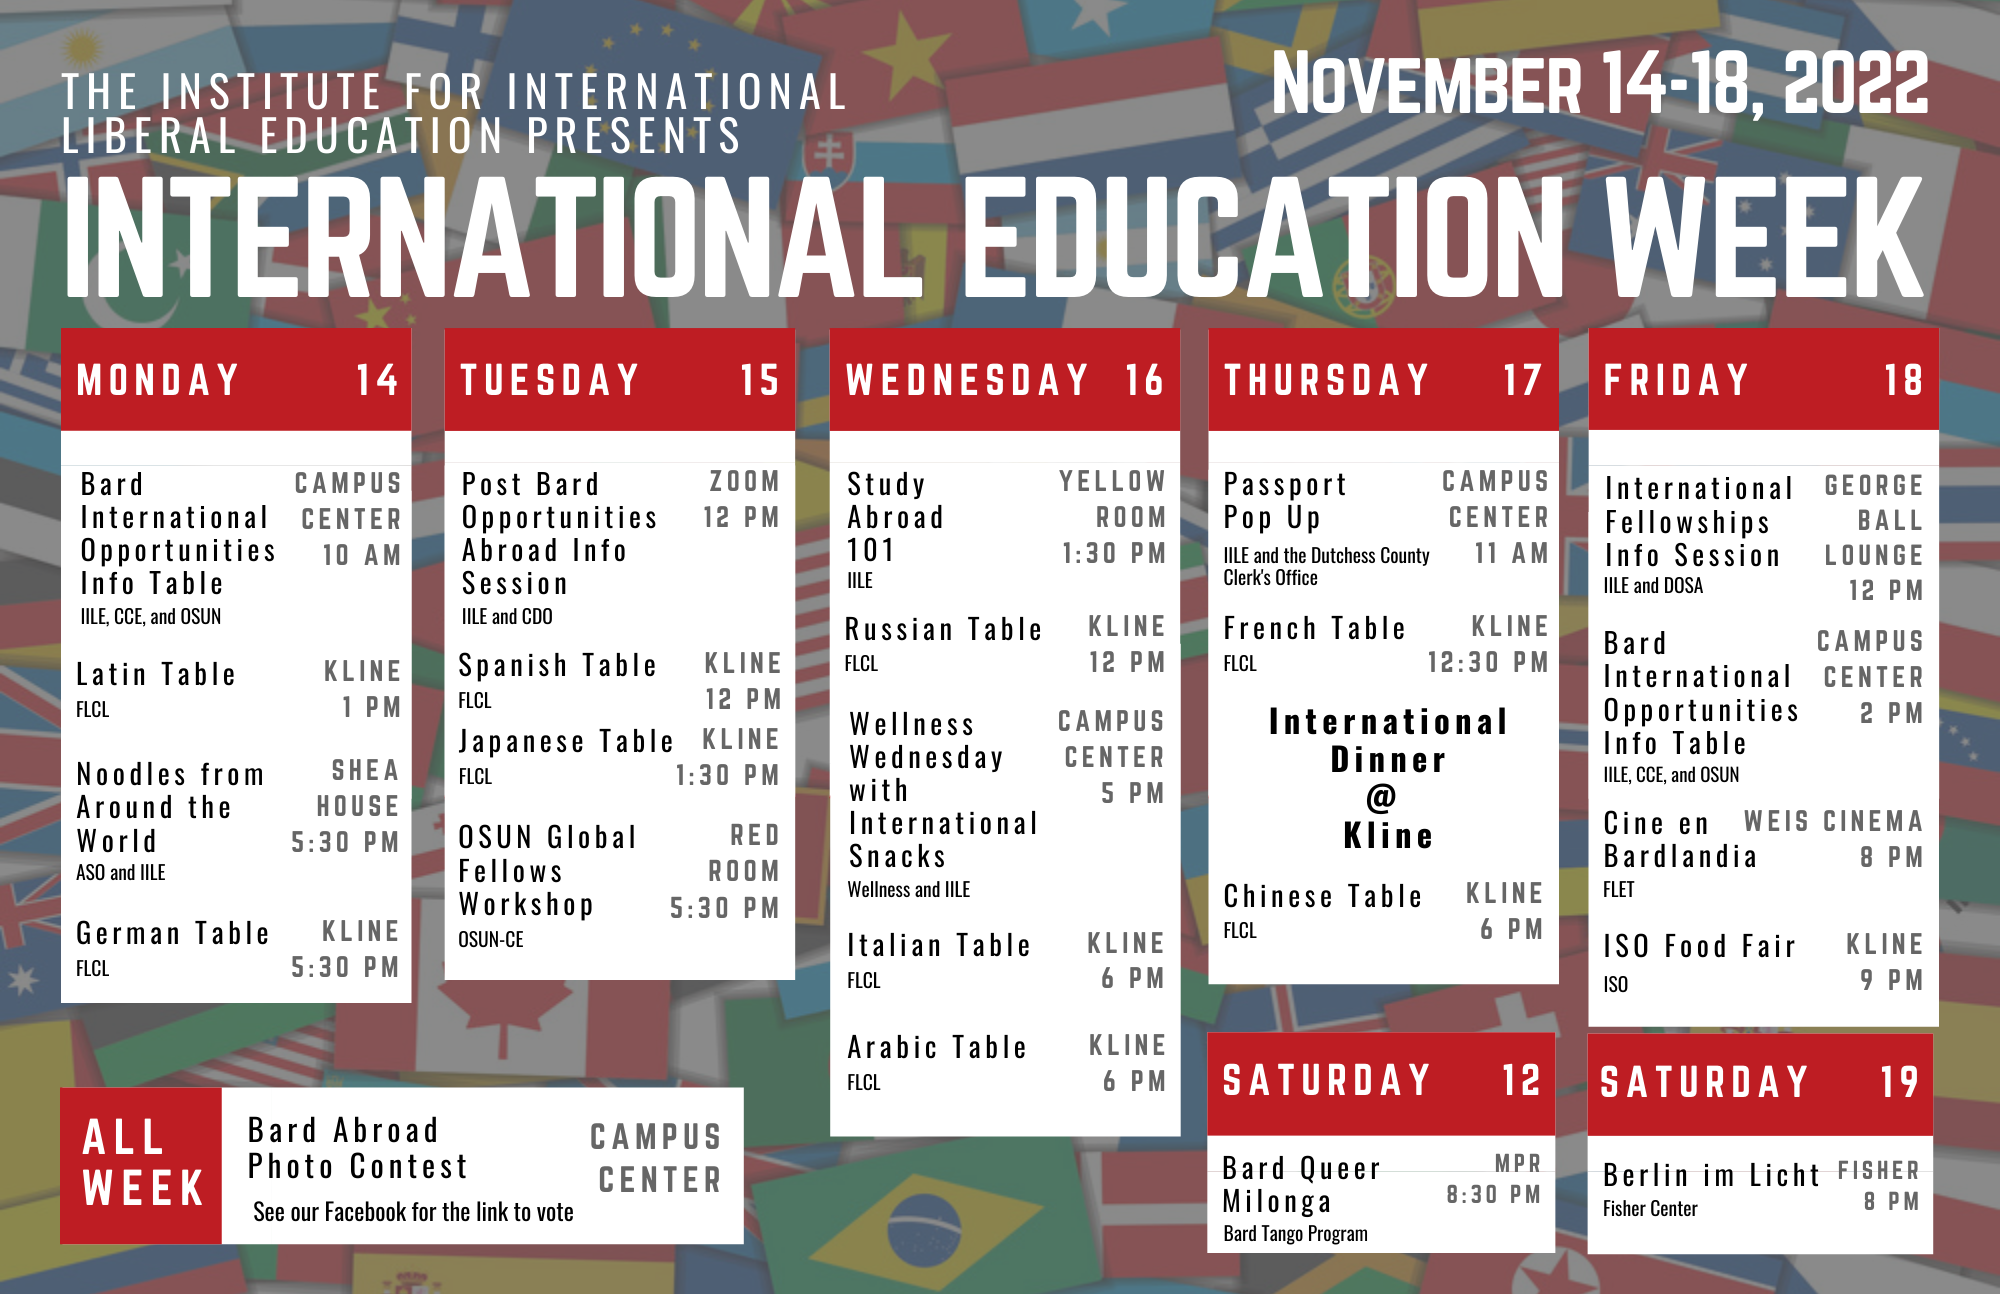 International Education Week 2022 at Bard